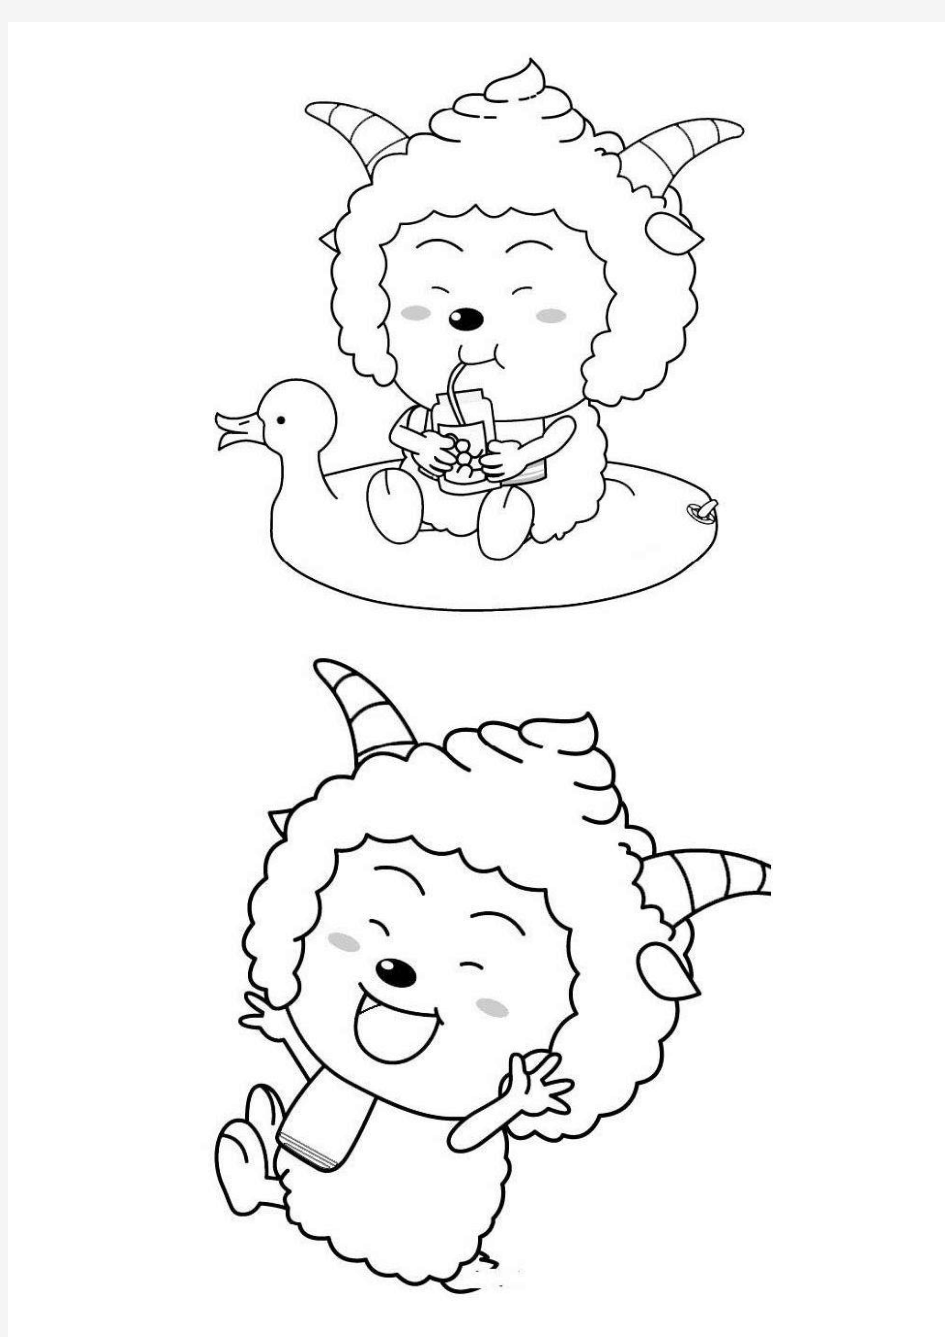 2012年喜羊羊与灰太狼填色画纸珍藏版(全)